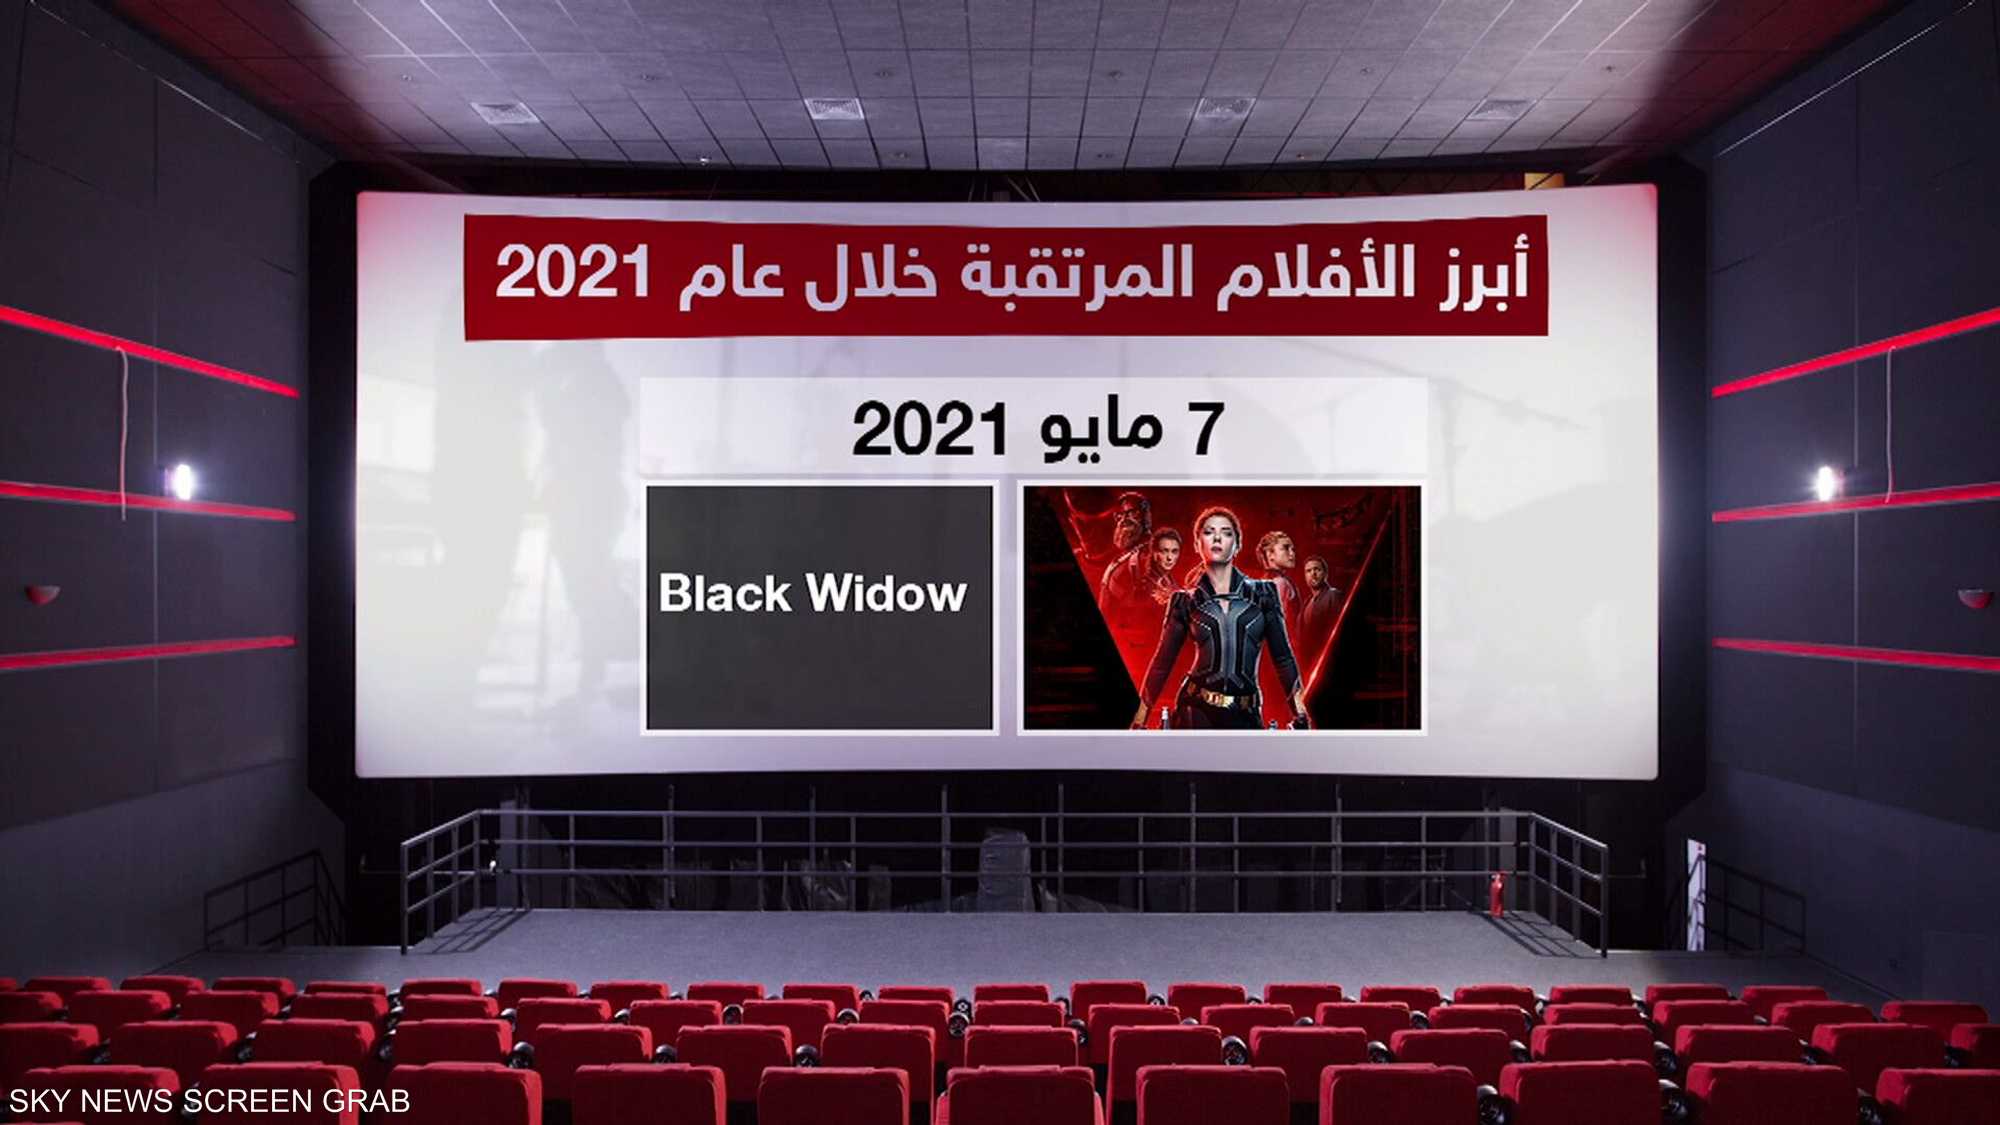 أبرز الأفلام خلال 2021، وهل ستعود حركة السينما لسابق عهدها؟